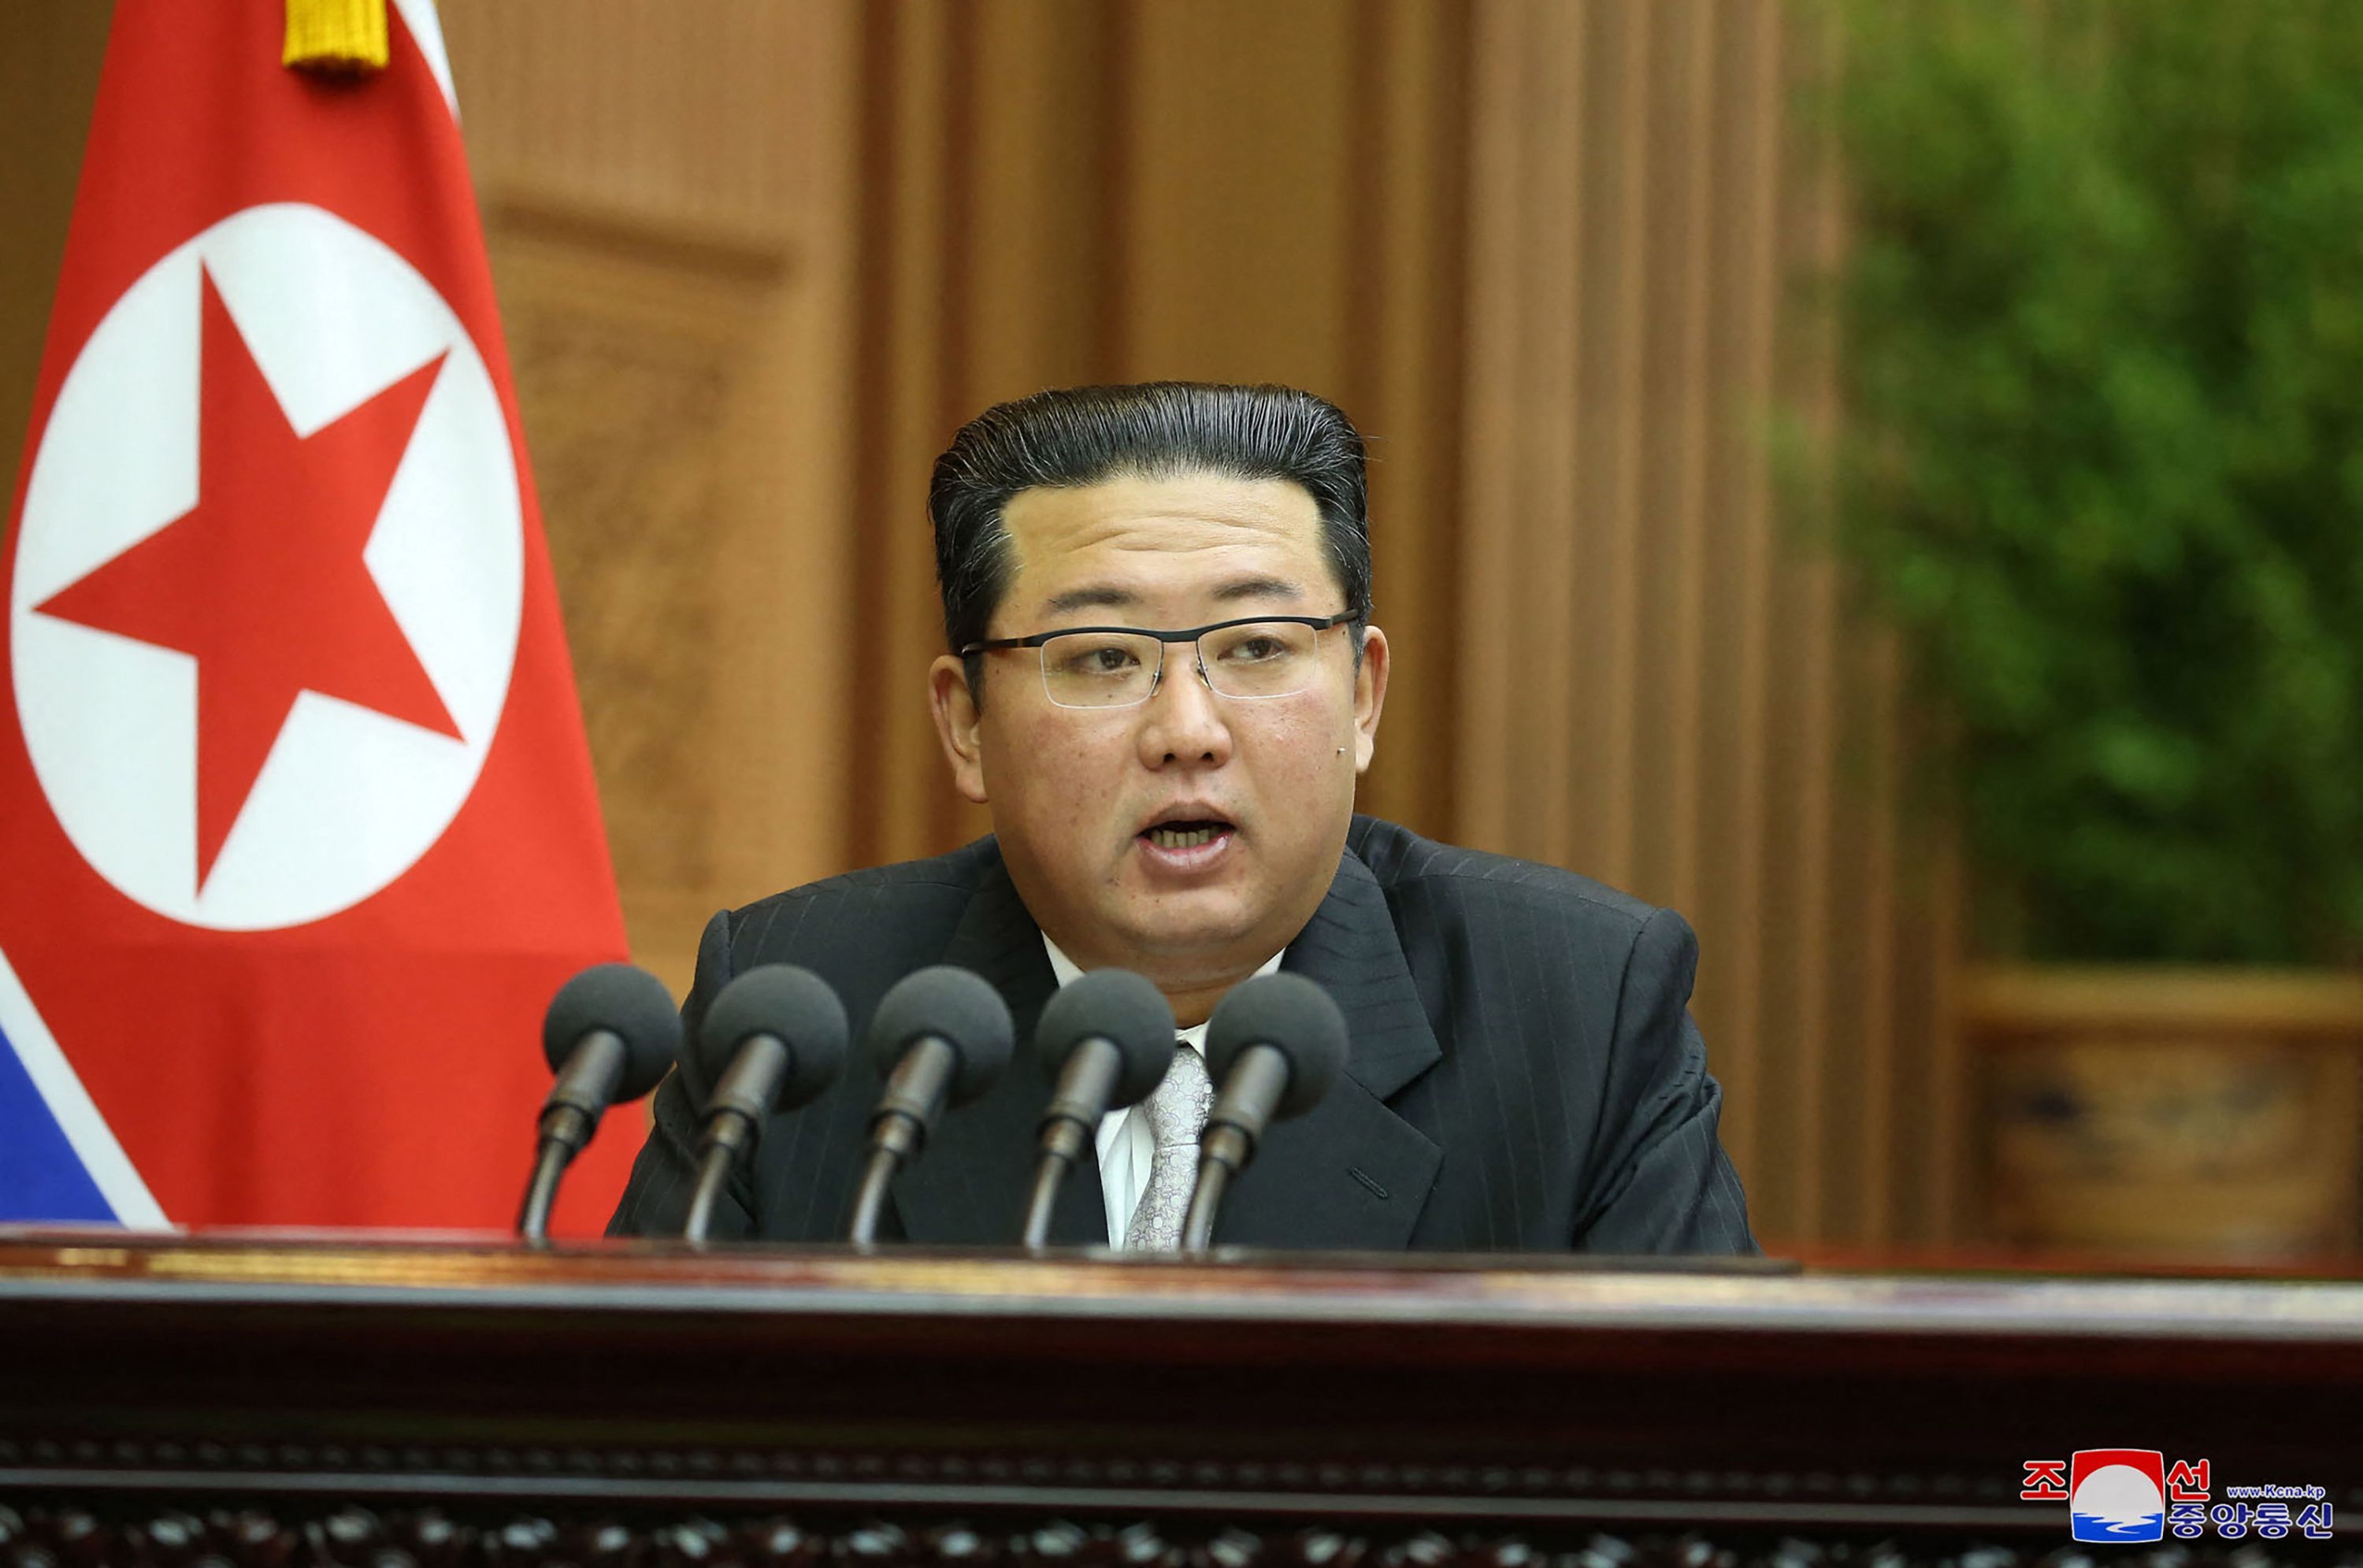 El lder norcoreano Kim Jong Un.